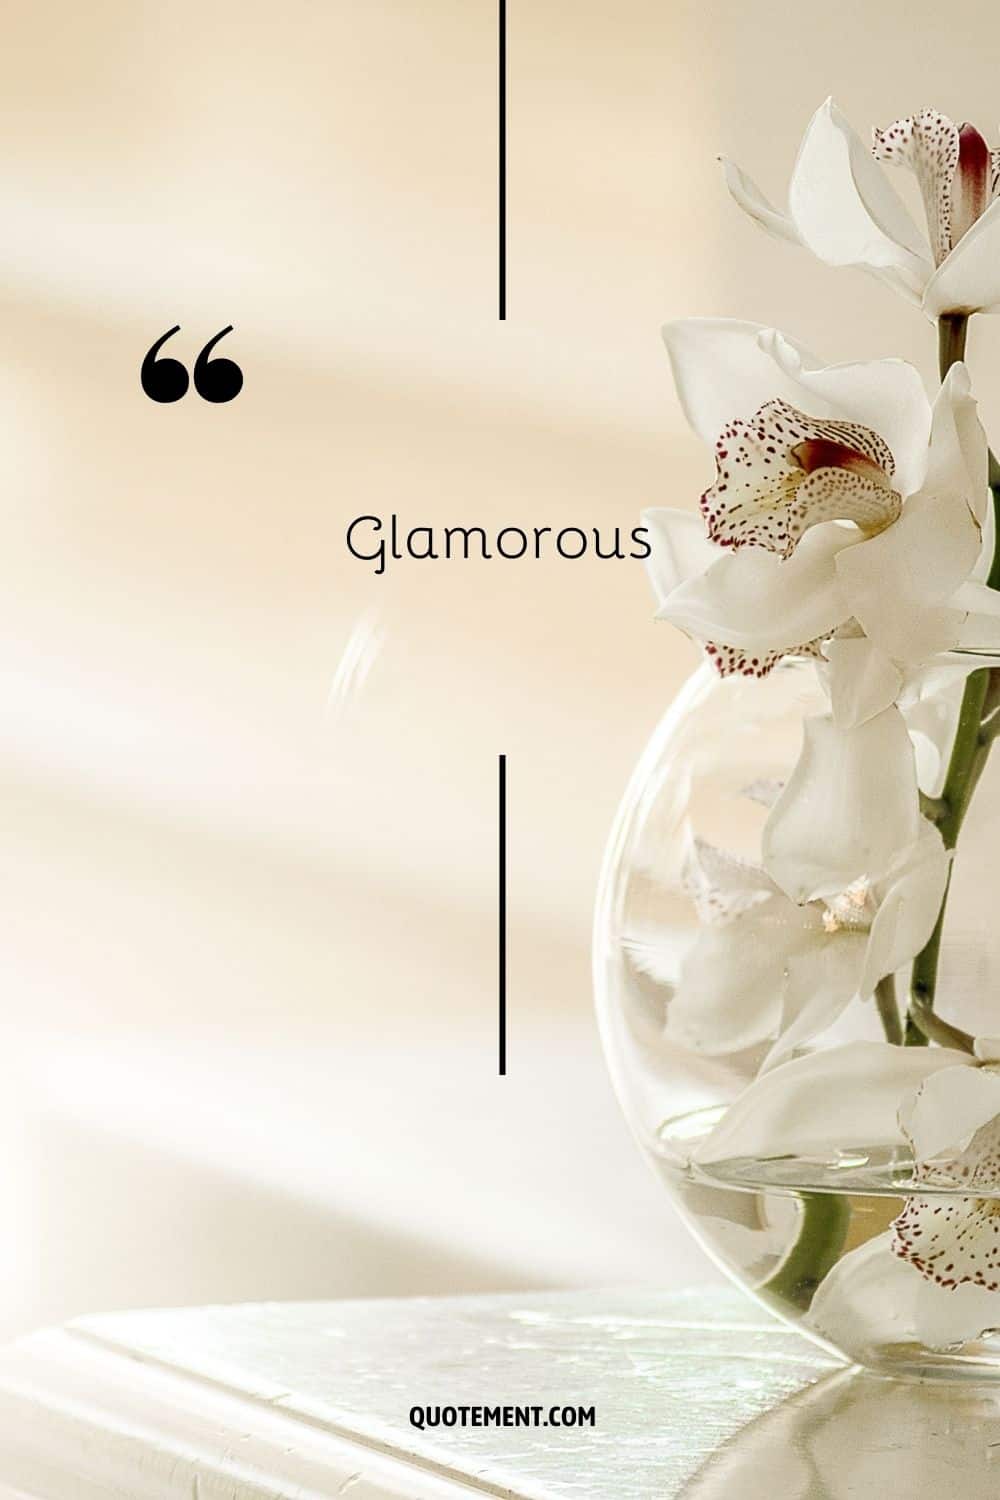 orquídea blanca en un jarrón que representa la palabra glamour